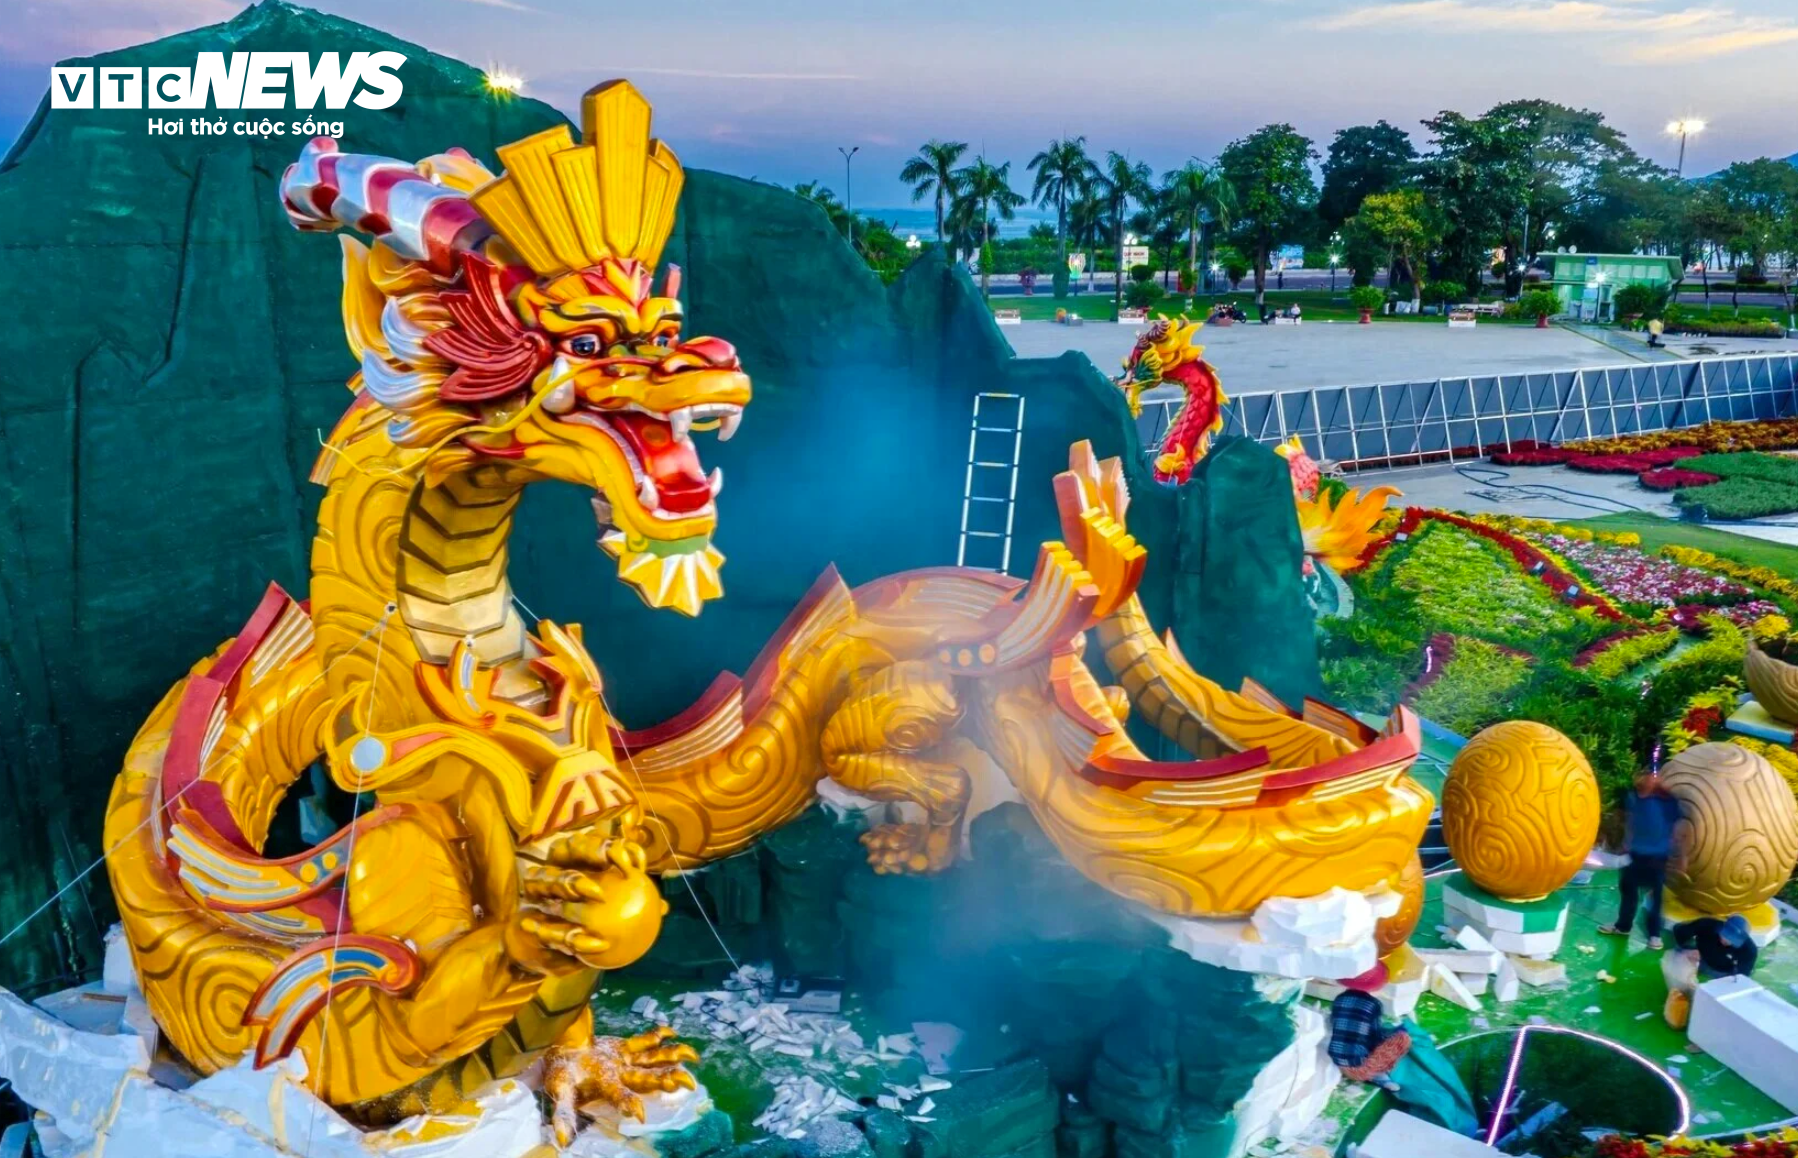 Cụm linh vật rồng Bình Định được bạn đọc Báo điện tử VTC News bình chọn với số phiếu cao nhất.